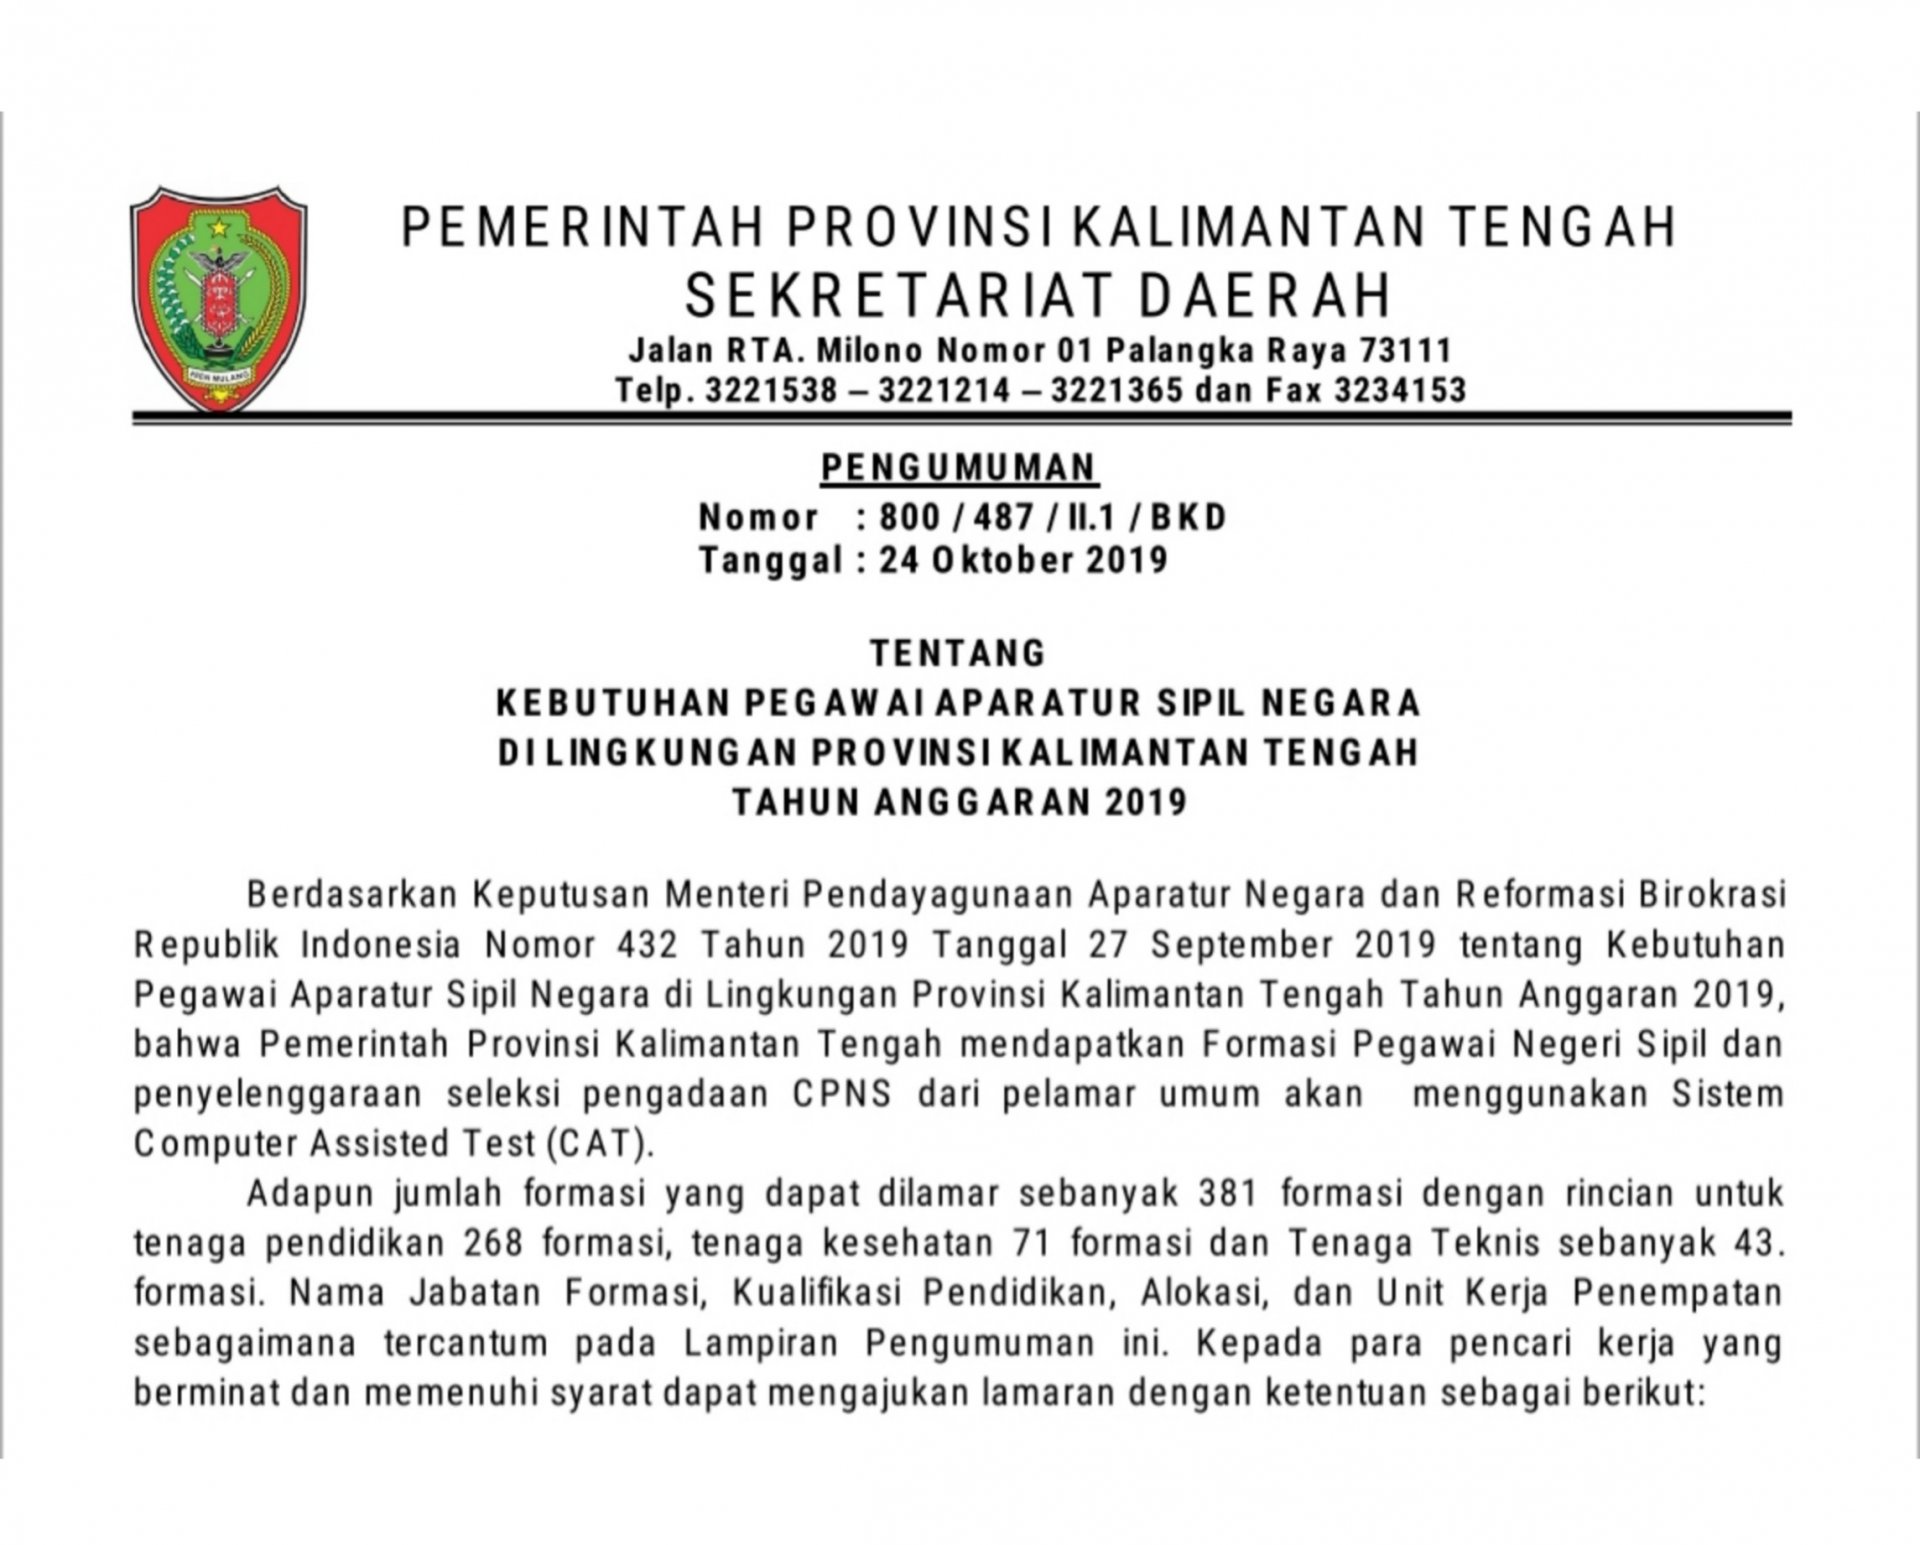 Pengumuman Nomor: 800/487/II.1/BKD Tentang Kebutuhan Pegawai Aparatur Sipil Negara di Lingkungan Pemerintah Provinsi Kalimantan Tengah Tahun Anggaran 2019